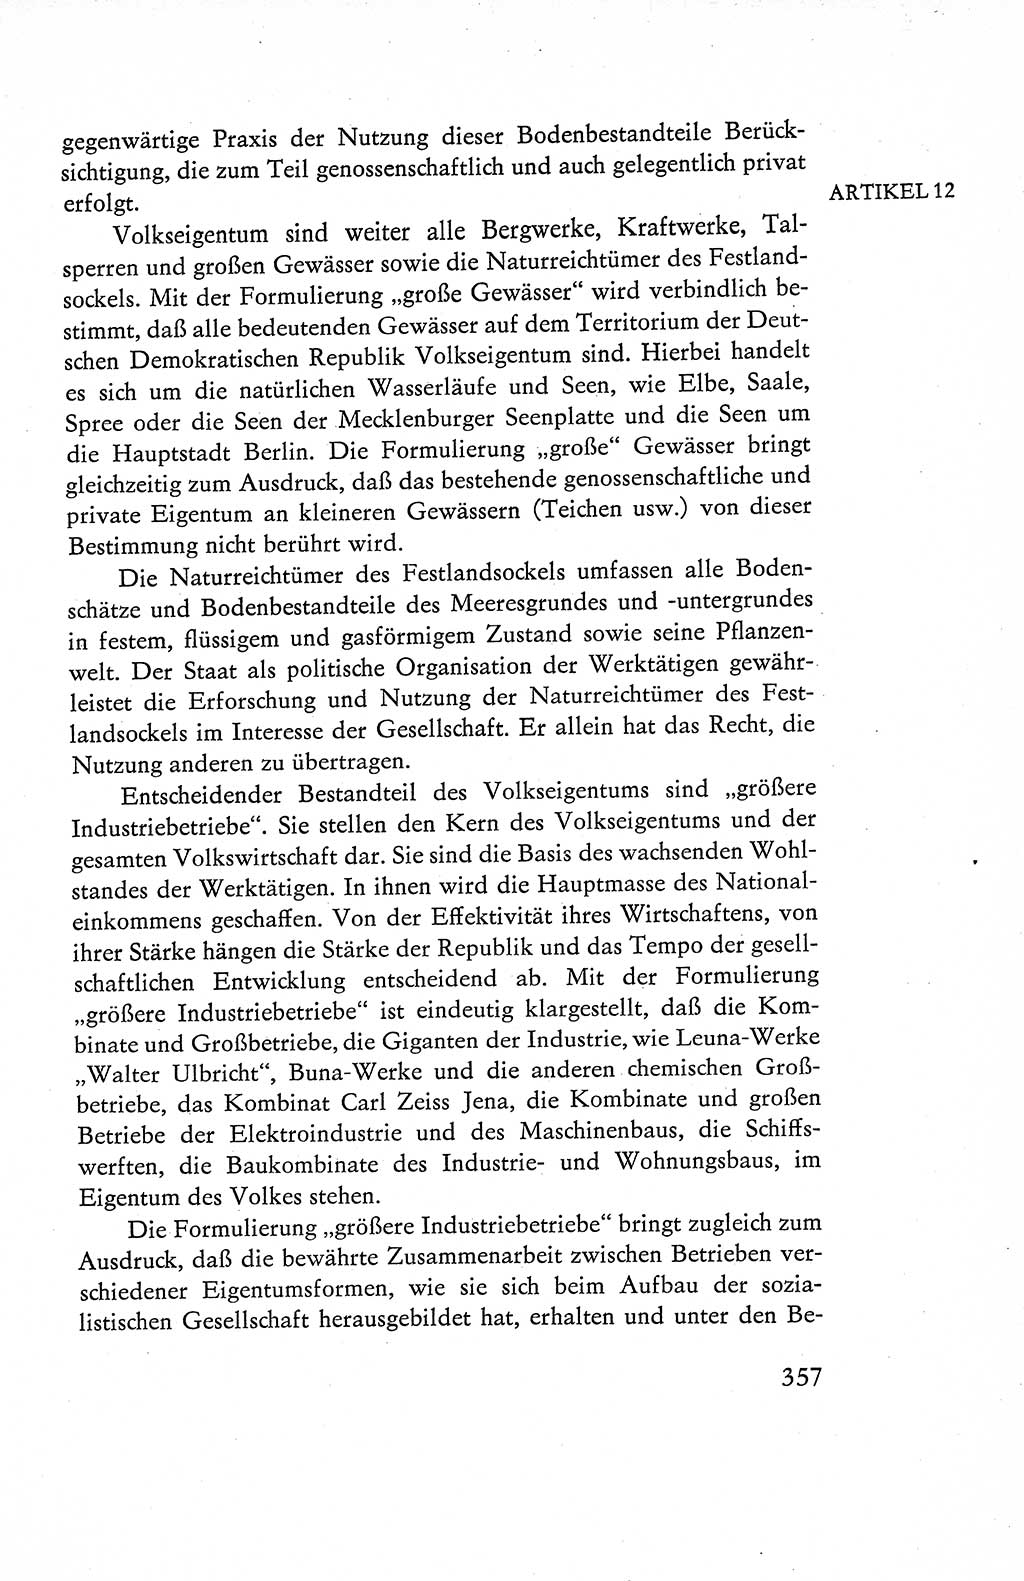 Verfassung der Deutschen Demokratischen Republik (DDR), Dokumente, Kommentar 1969, Band 1, Seite 357 (Verf. DDR Dok. Komm. 1969, Bd. 1, S. 357)